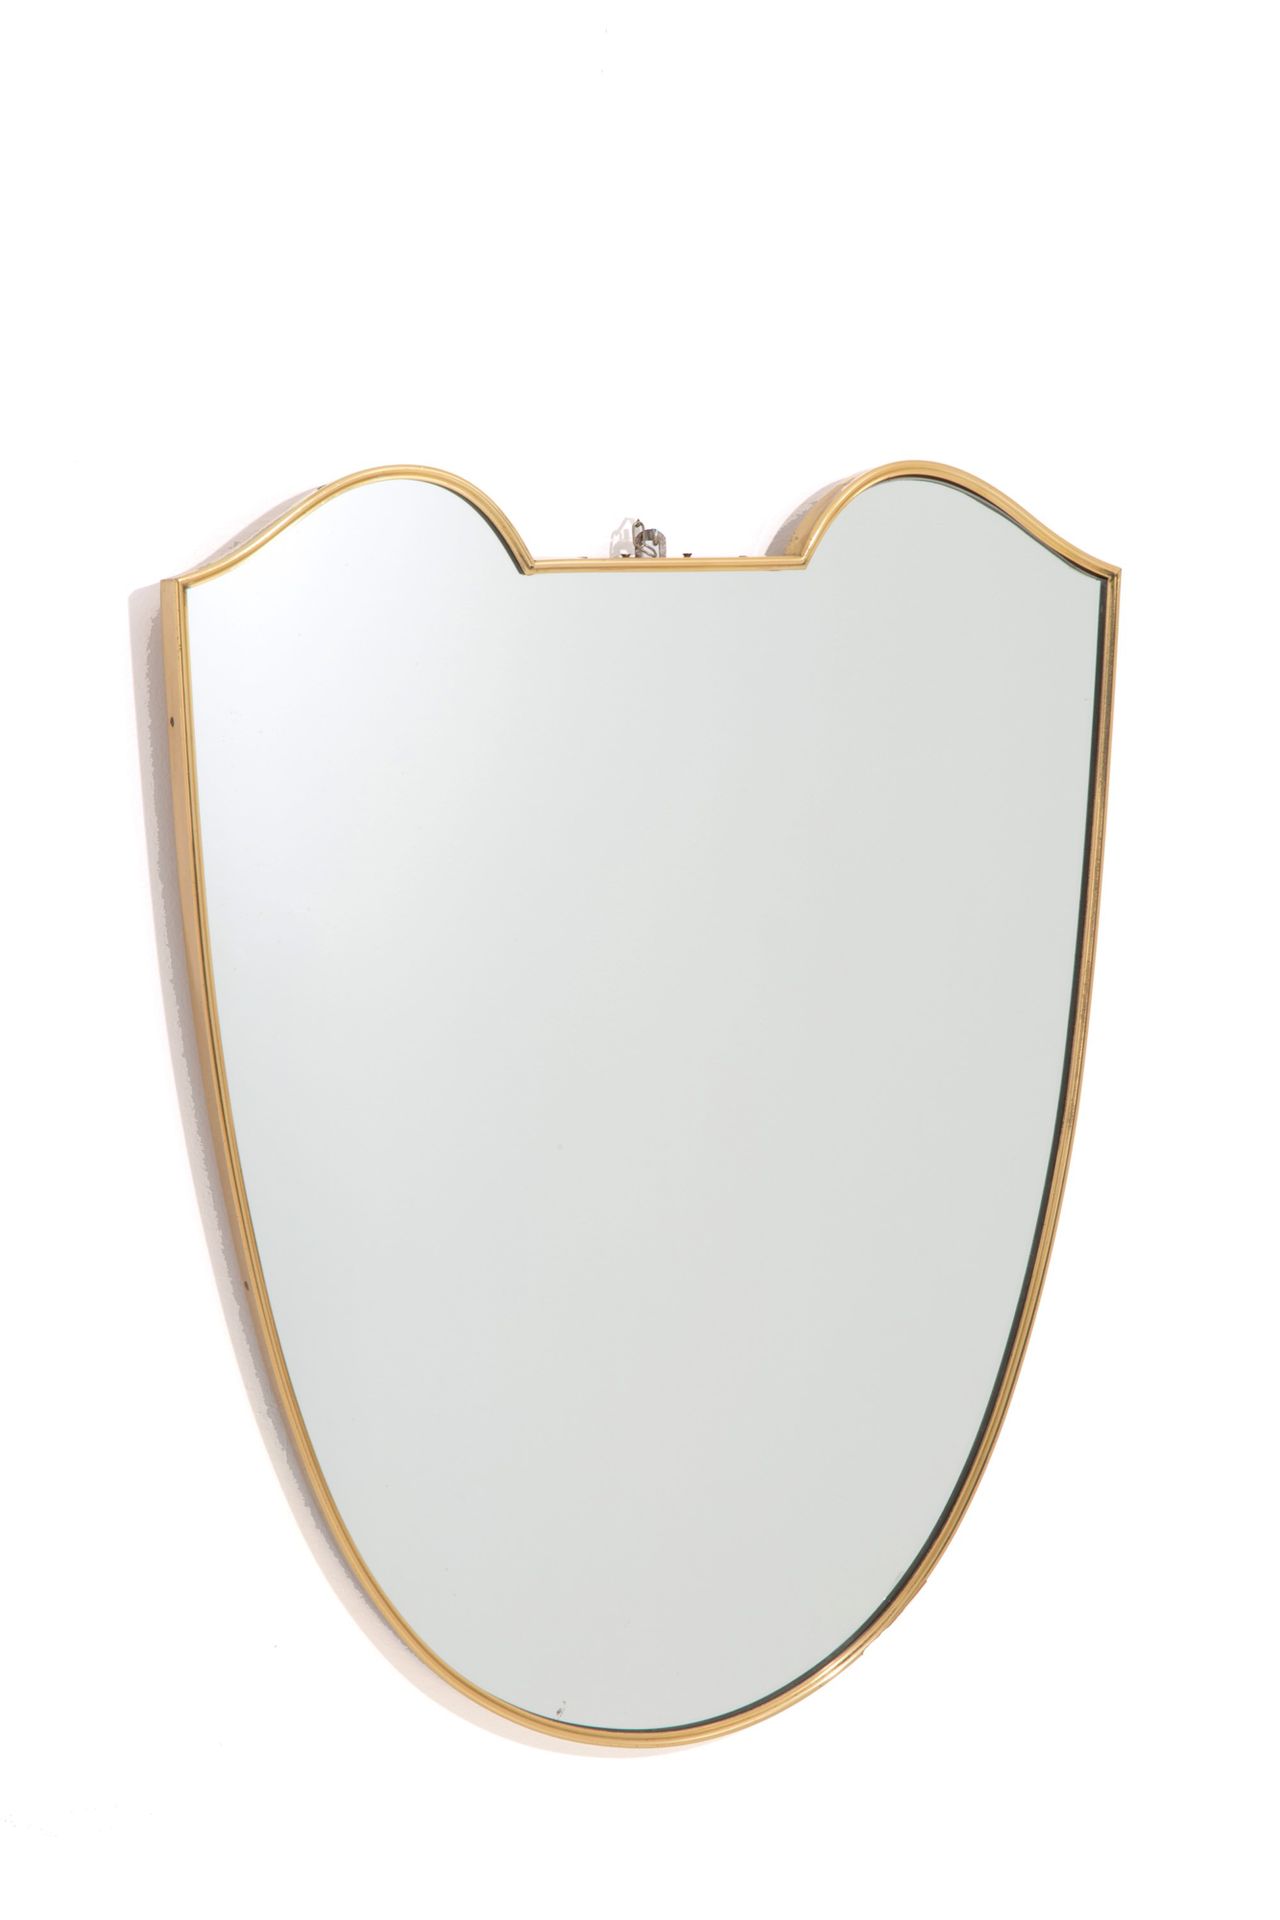 MIRROR Miroir de protection en laiton. 1950s. 72,5x54x2,5 cm environ.